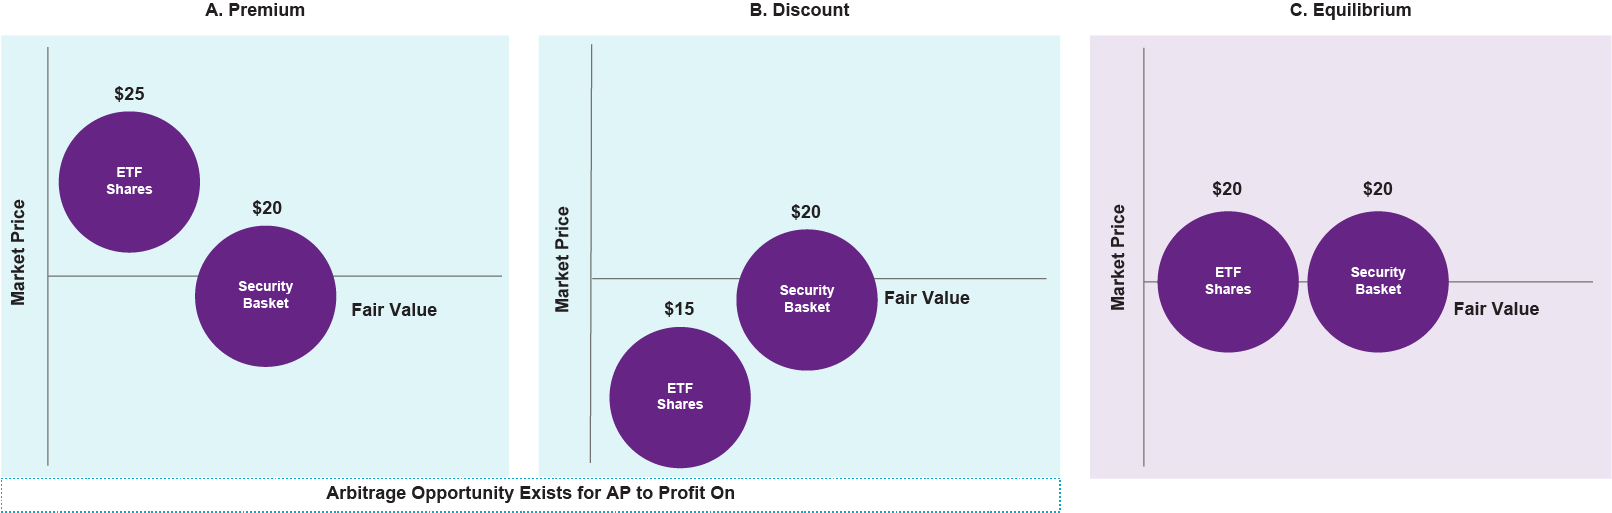 ETF Share Price Scenarios